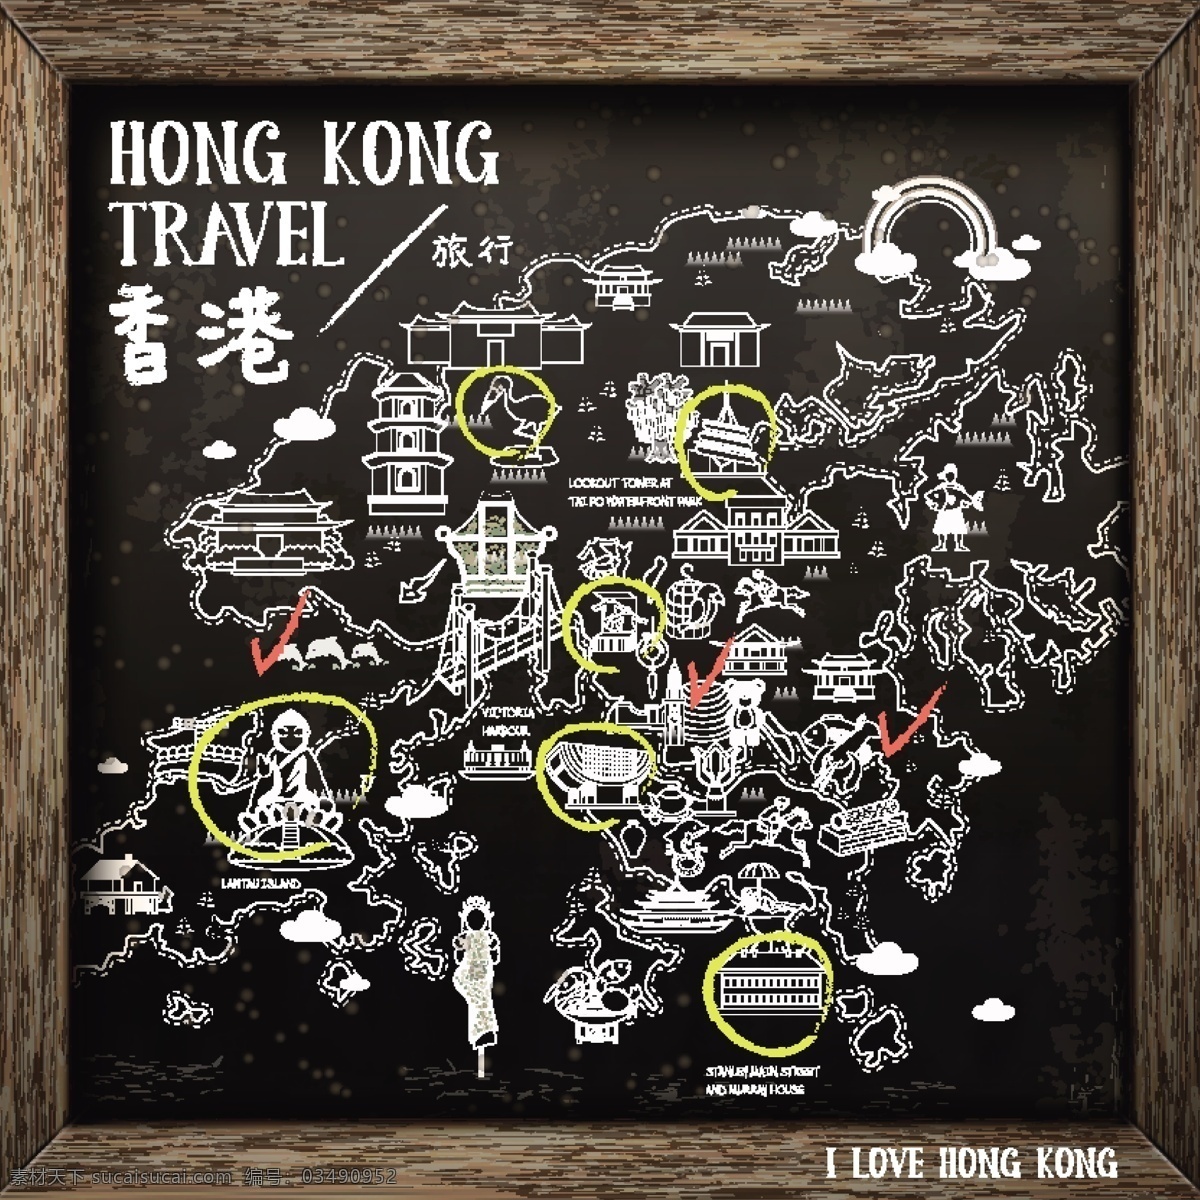 黑板 香港 旅行 景点 路线图 手绘 手绘地图 手绘路线图 香港旅行 旅行路线图 卡通地图 卡通路线图 香港路线图 旅游景点 扁平化地图 粉笔 黑色